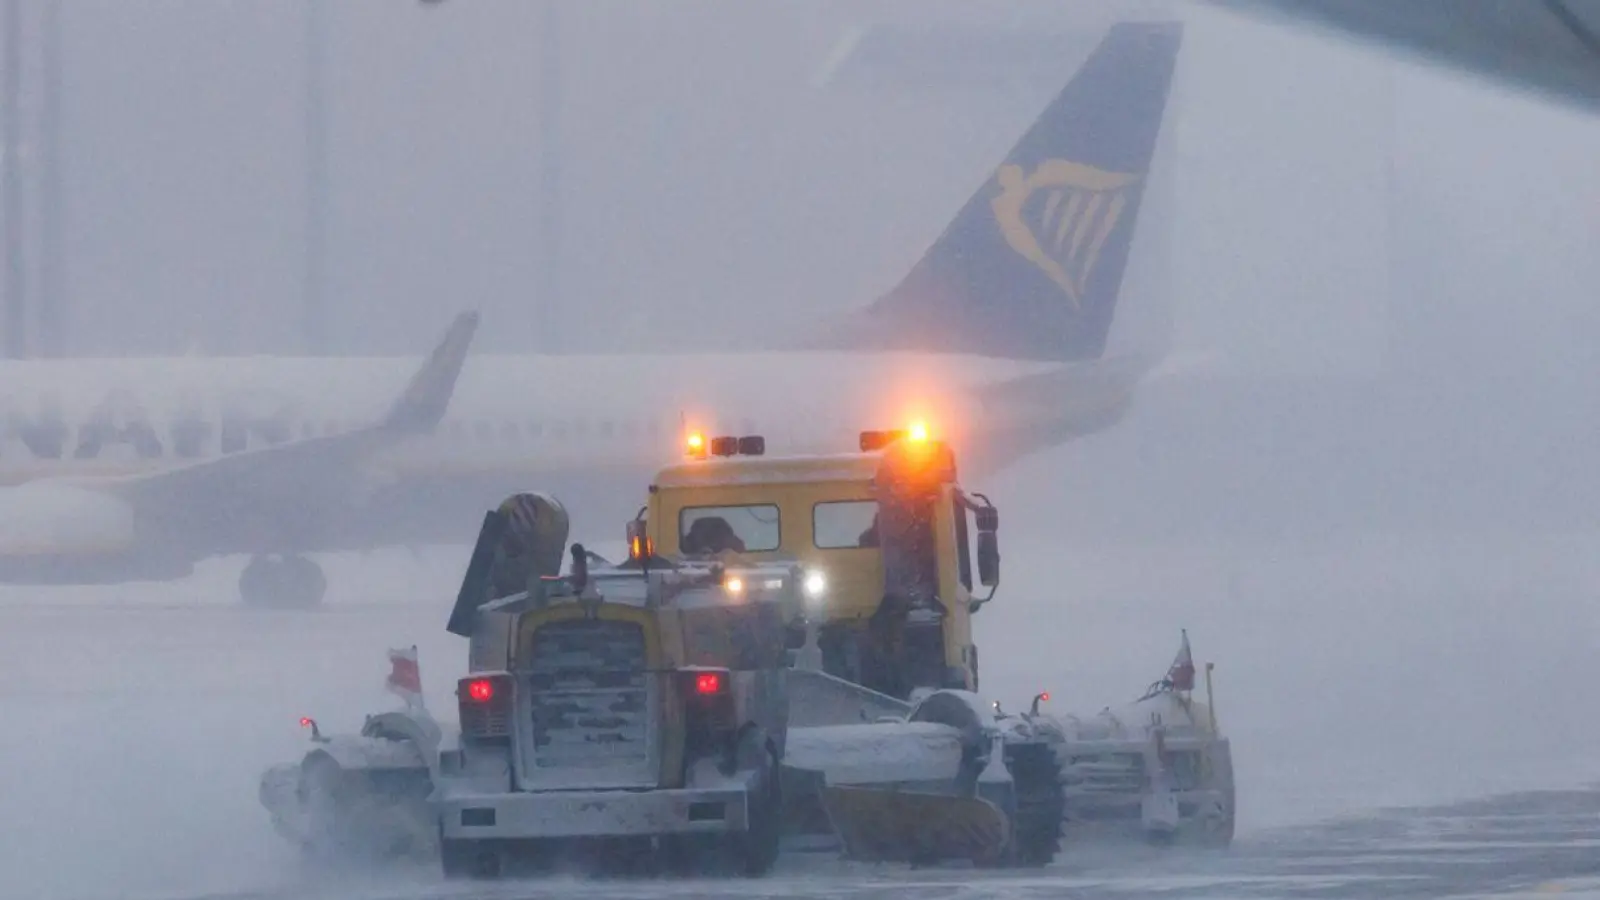 Passagiere haben ein Recht auf Erstattungen oder Ersatzbeförderung, wenn ein Flug aufgrund von starkem Winterwetter ausfällt. (Foto: Daniel Karmann/dpa/dpa-tmn)